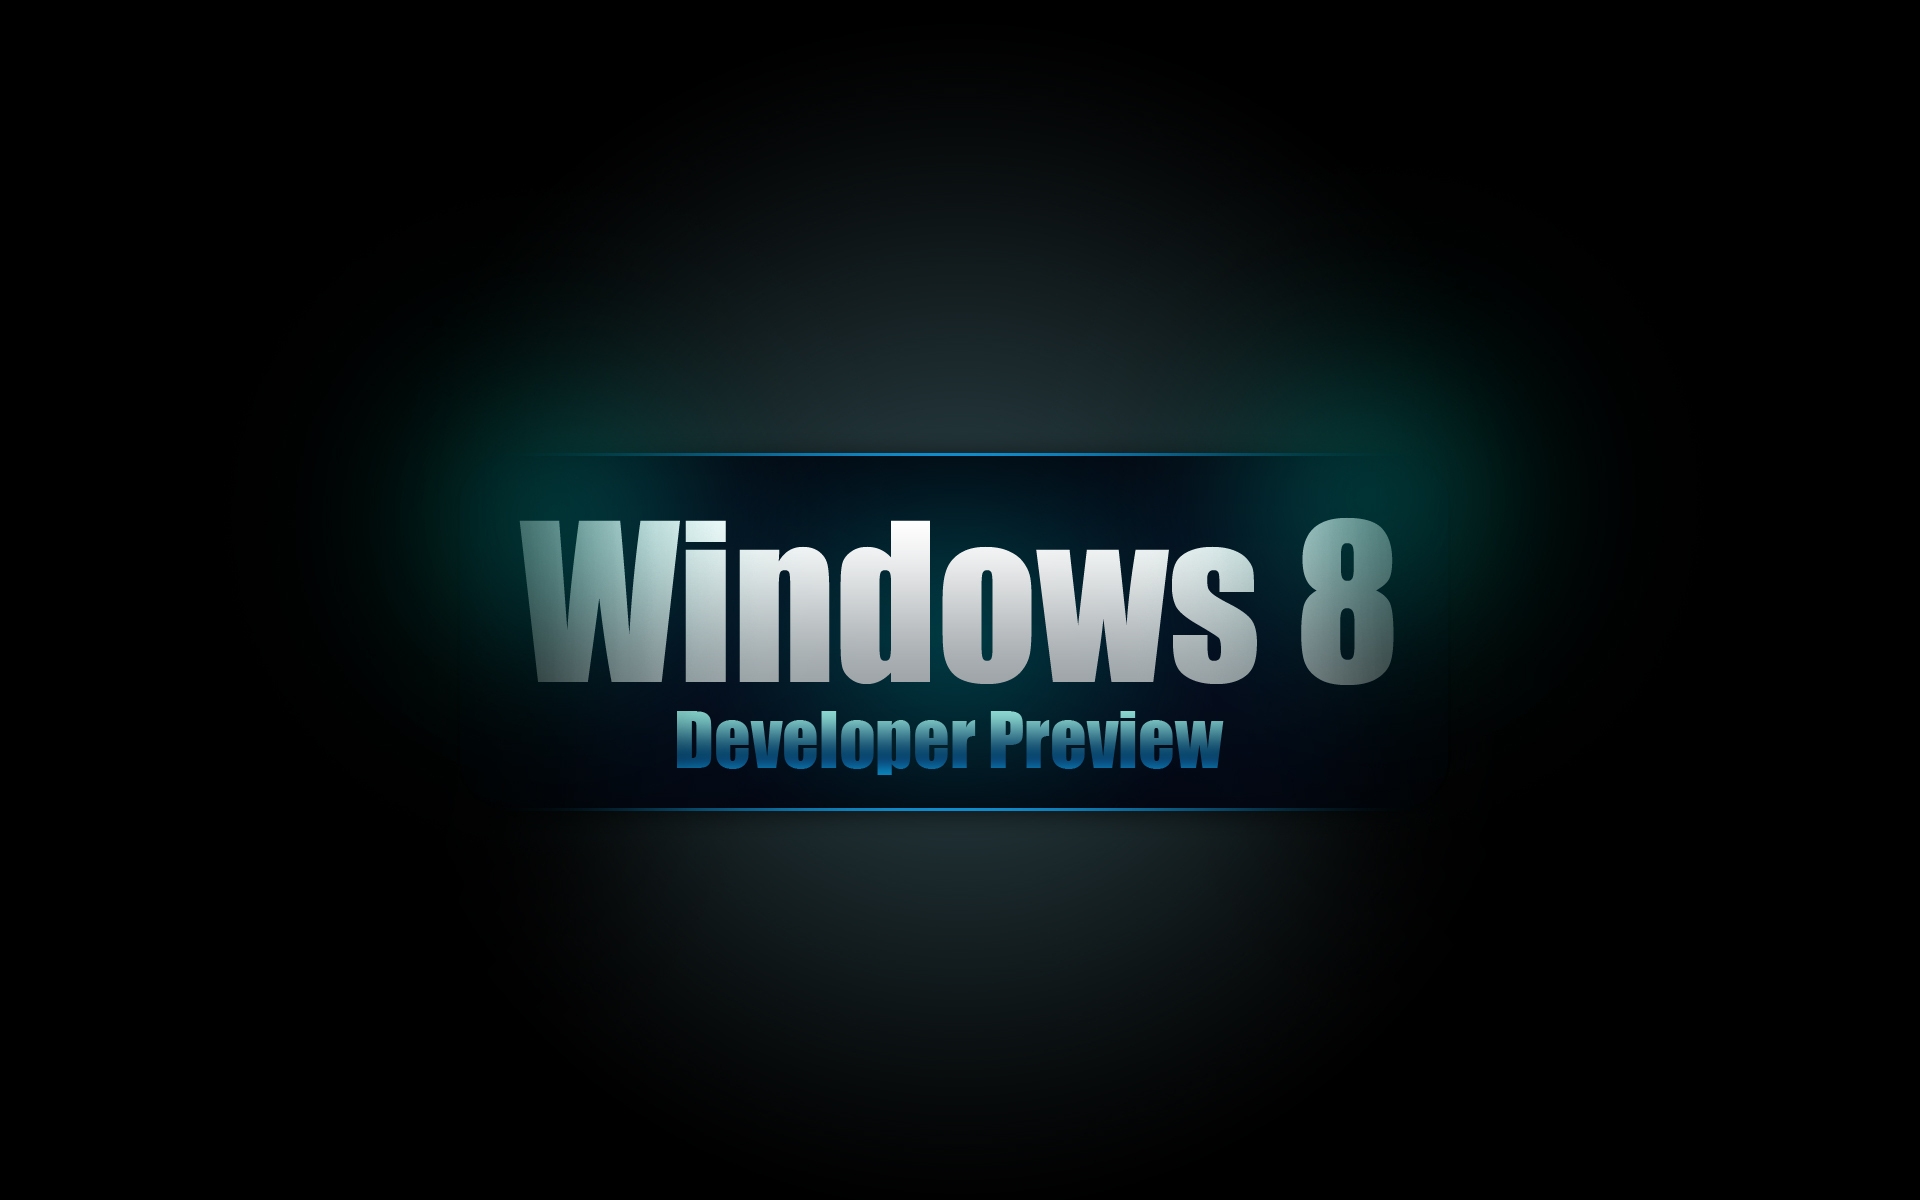 Windows 8 Developer for 1920 x 1200 widescreen resolution